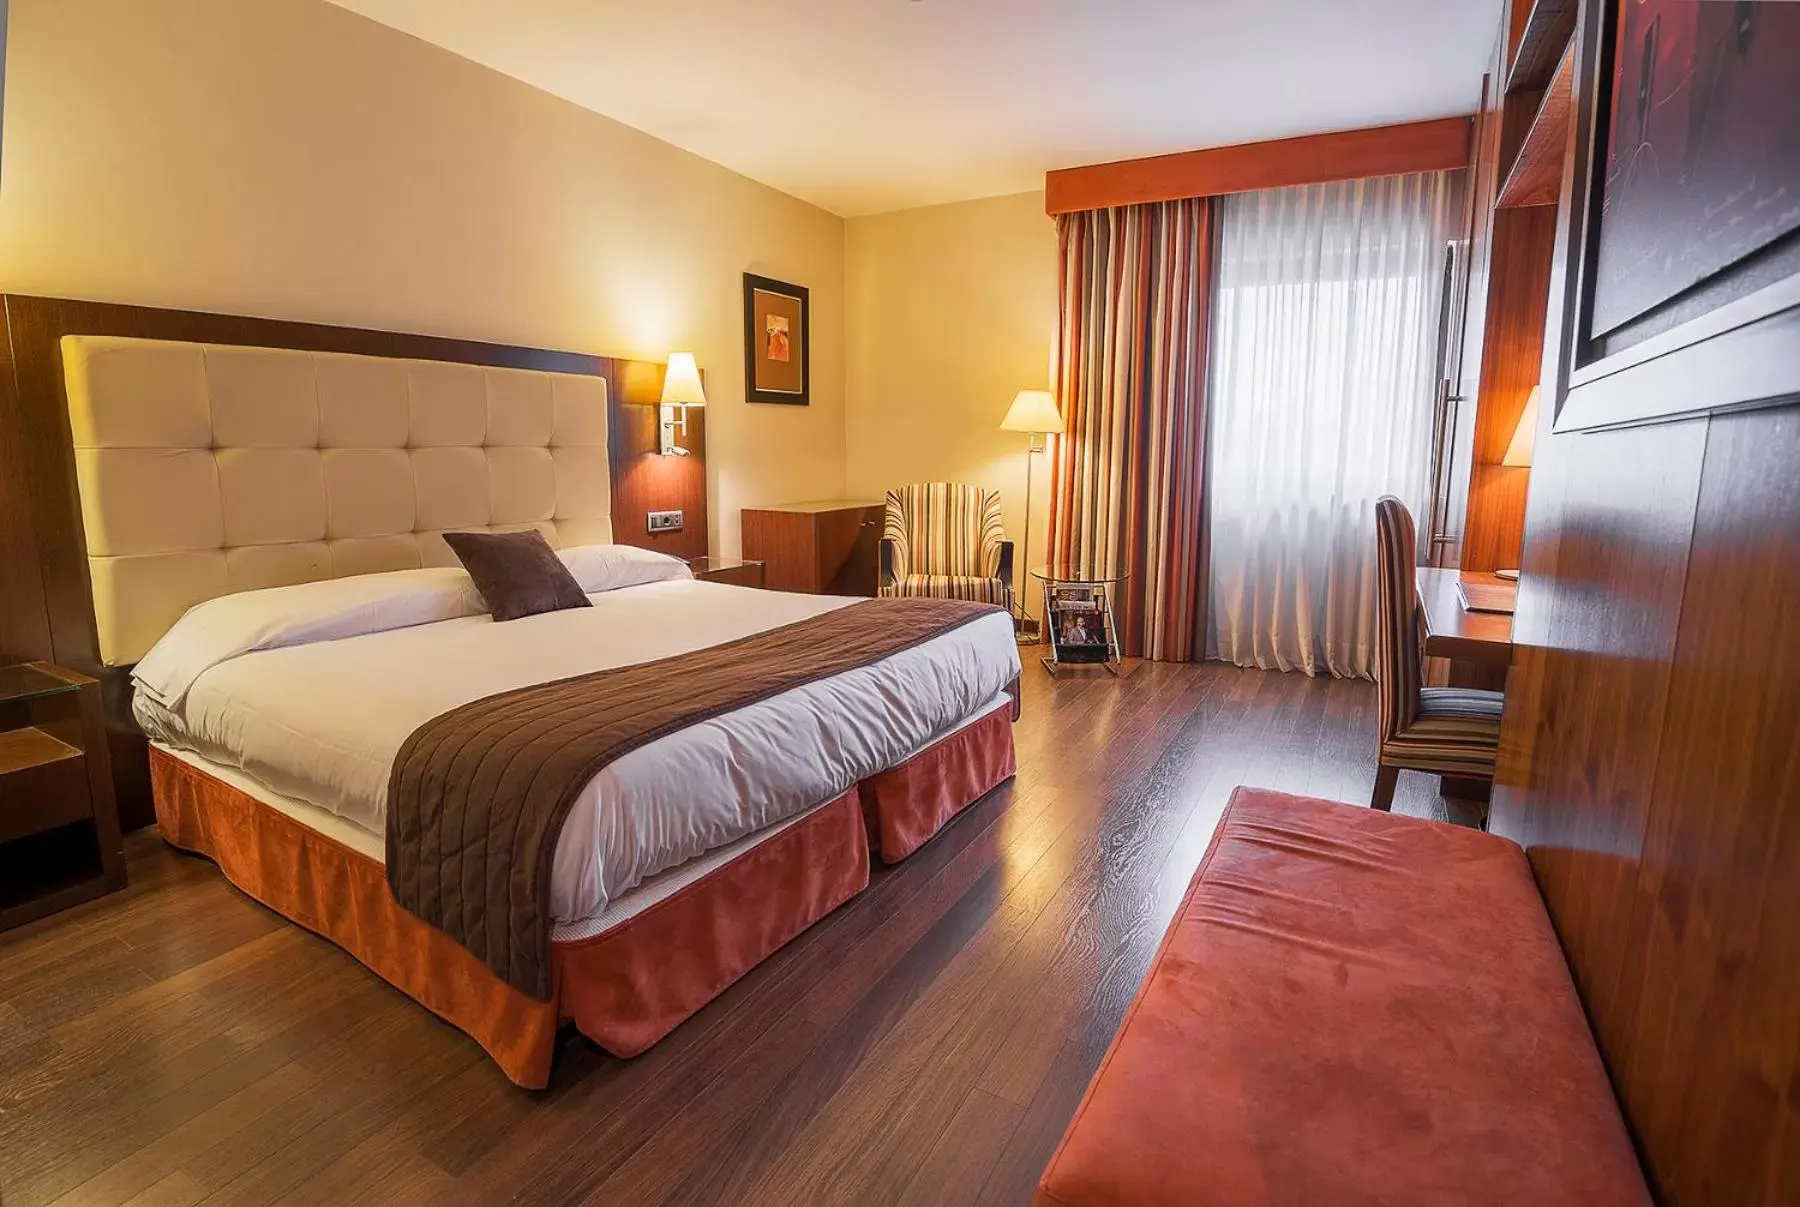 Bedroom, Bed in Hospedium Hotel Mirador de Gredos